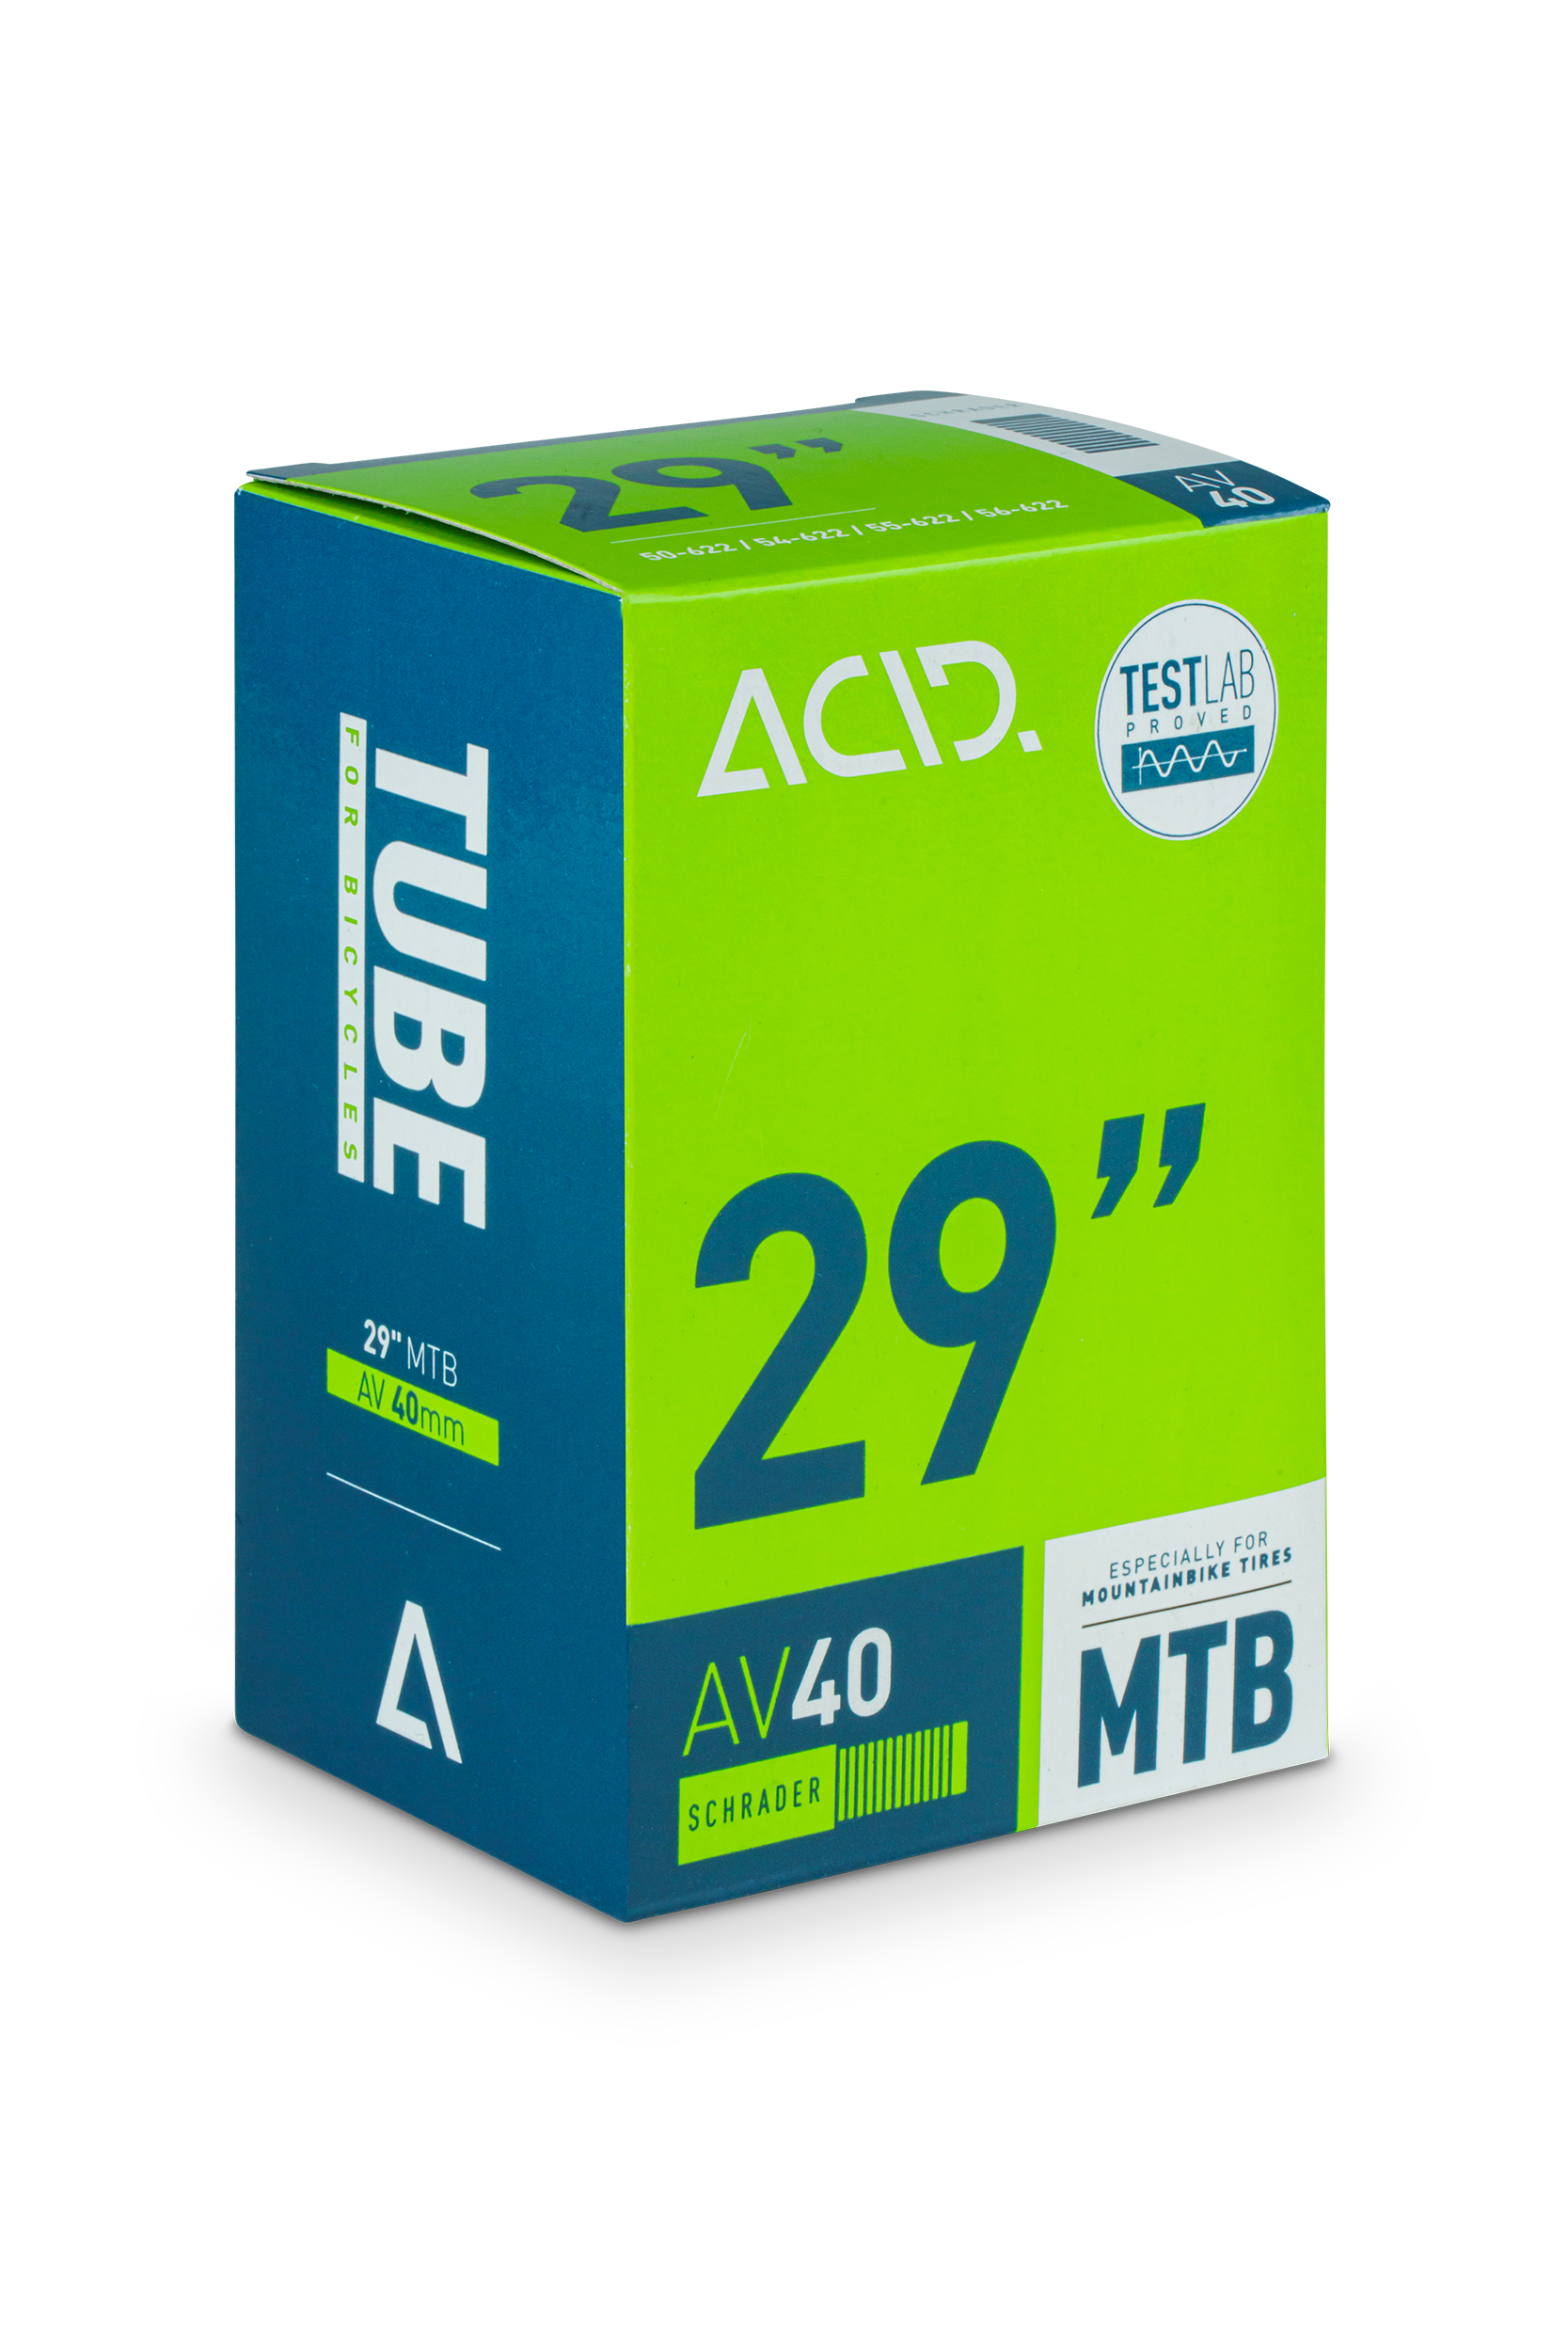 ACID Tube 29" MTB AGV 40mm